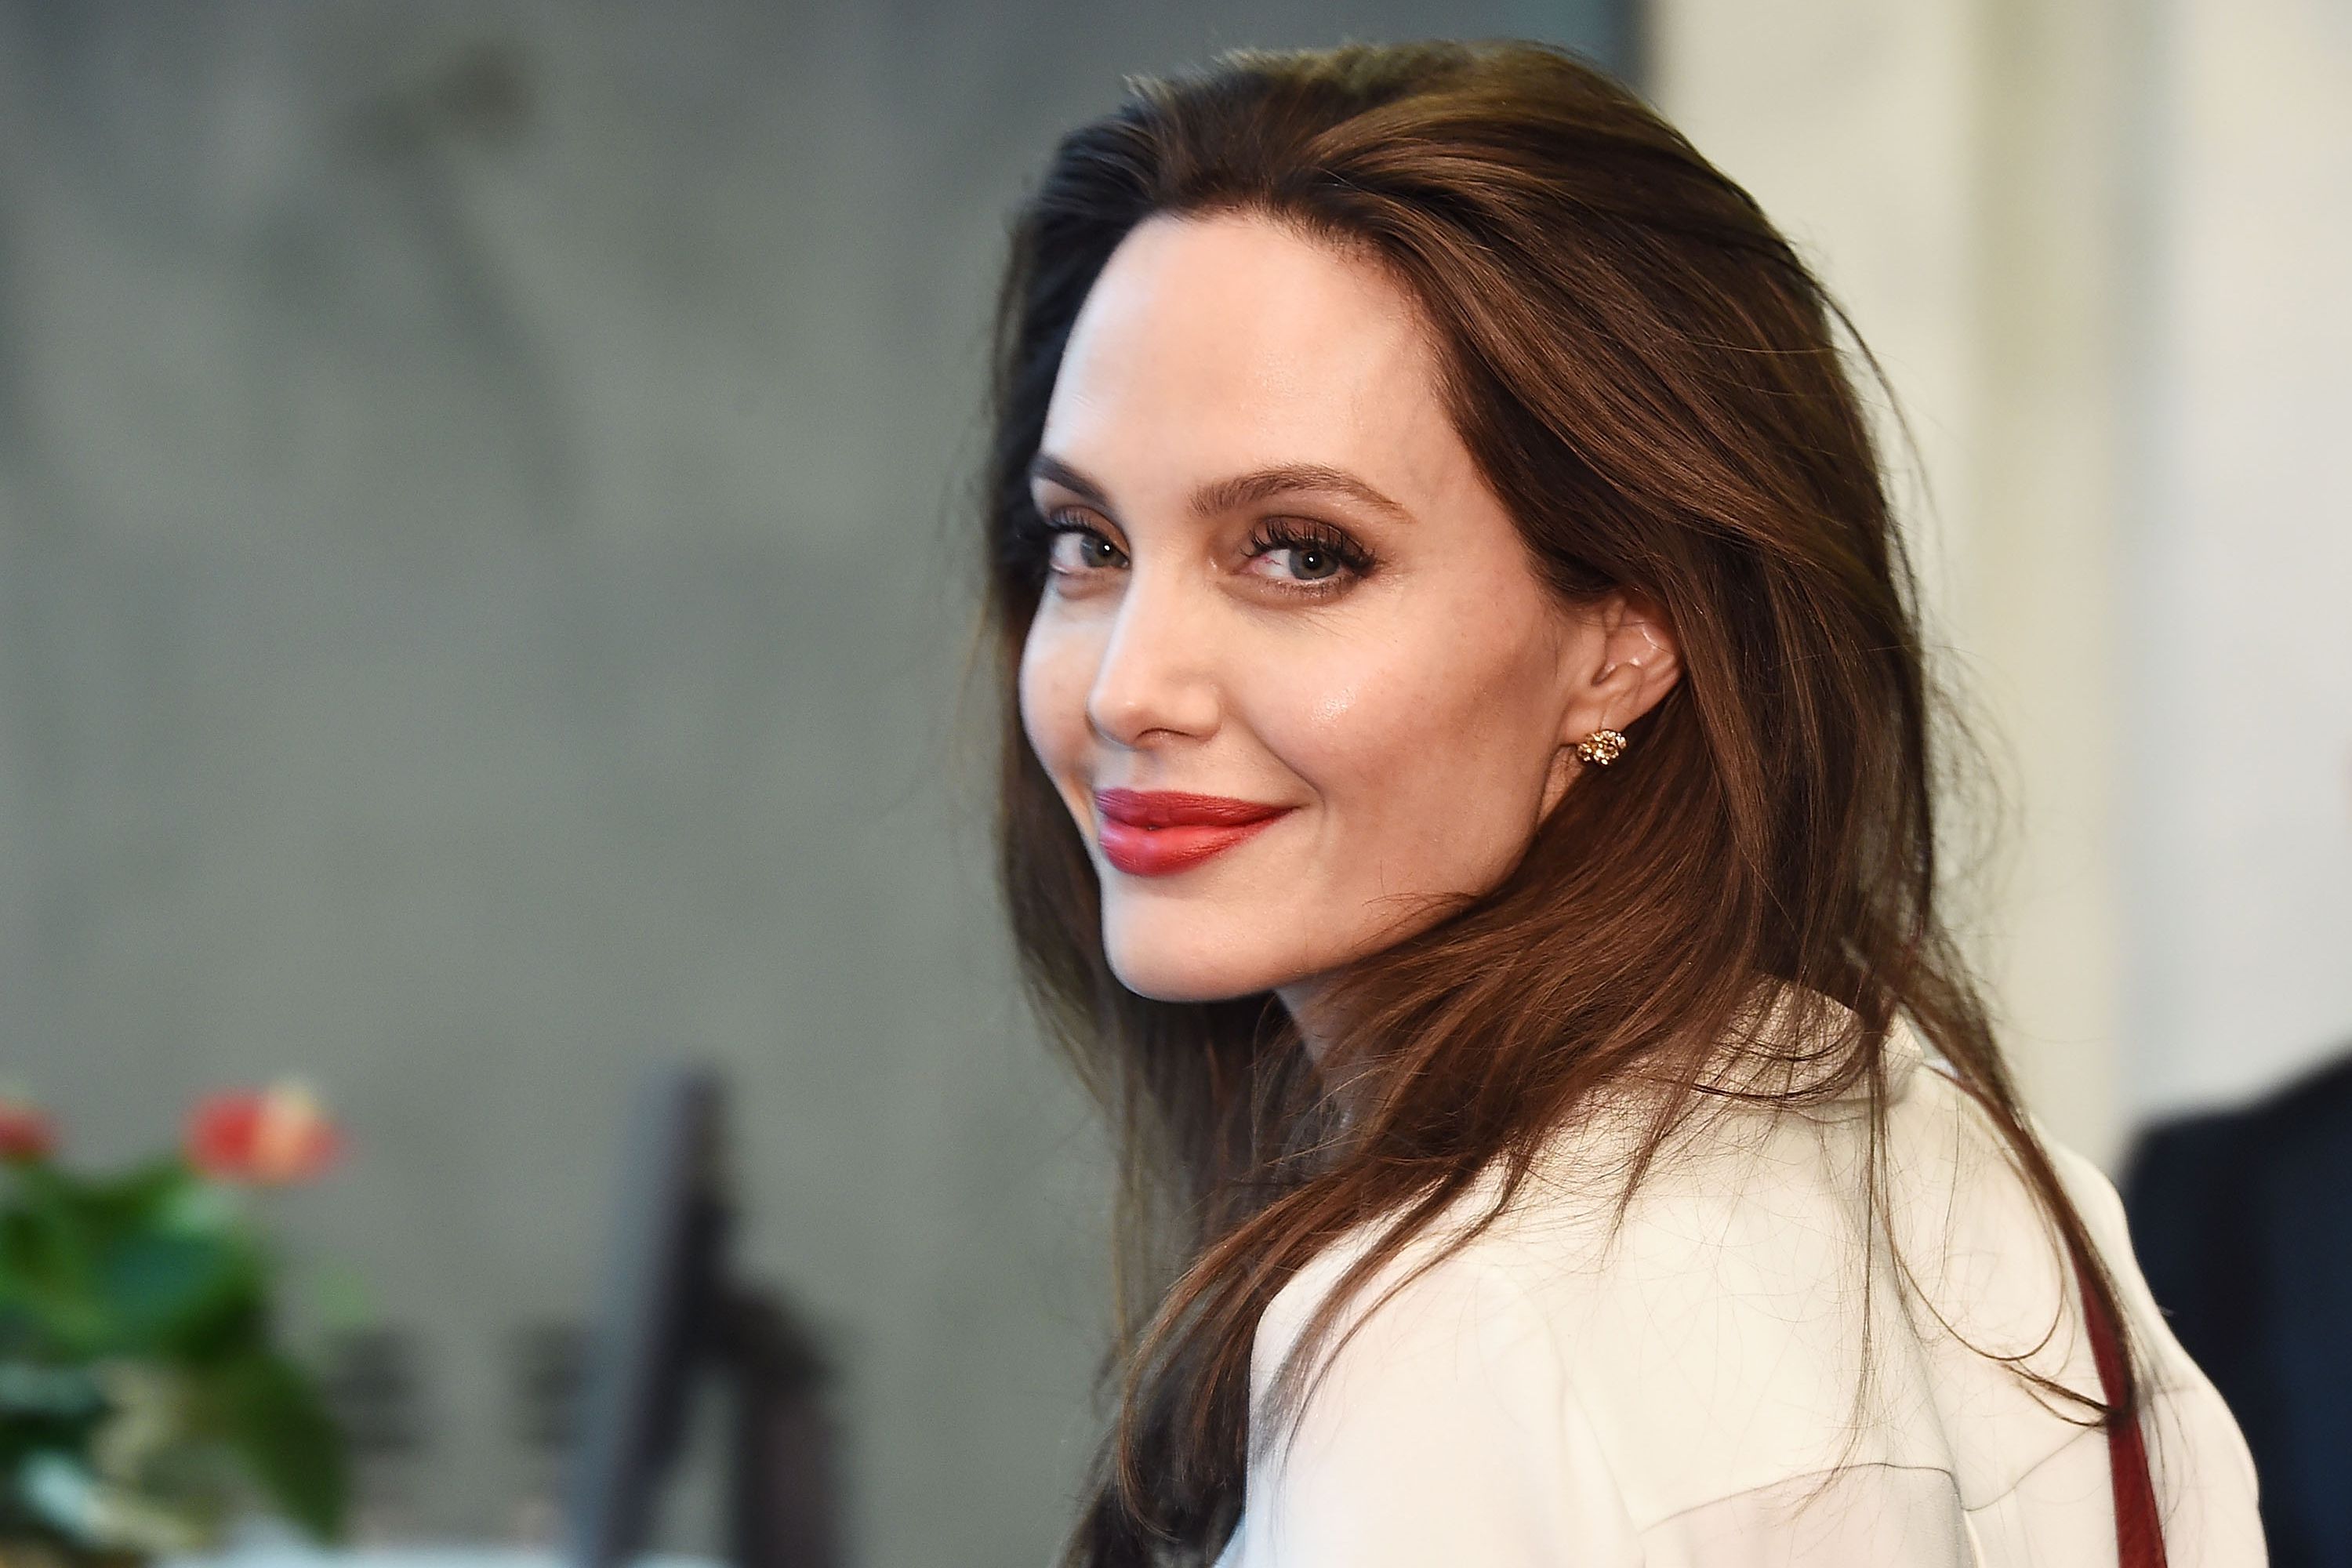 Káº¿t quáº£ hÃ¬nh áº£nh cho Angelina Jolie